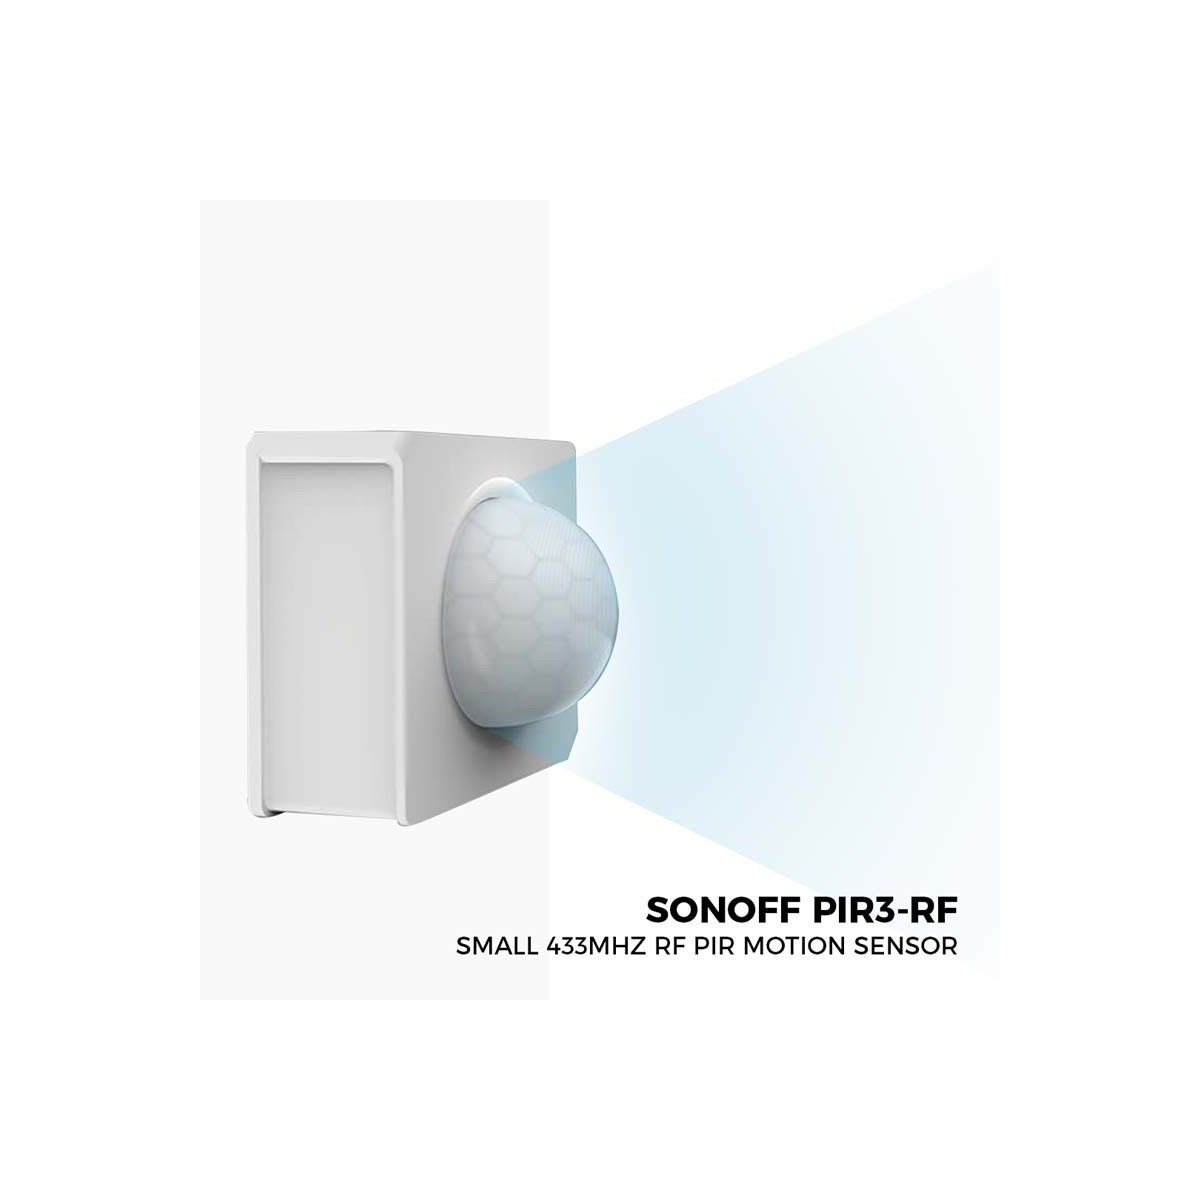 Small 433Mhz RF PIR Motion Sensor | SONOFF PIR3-RF